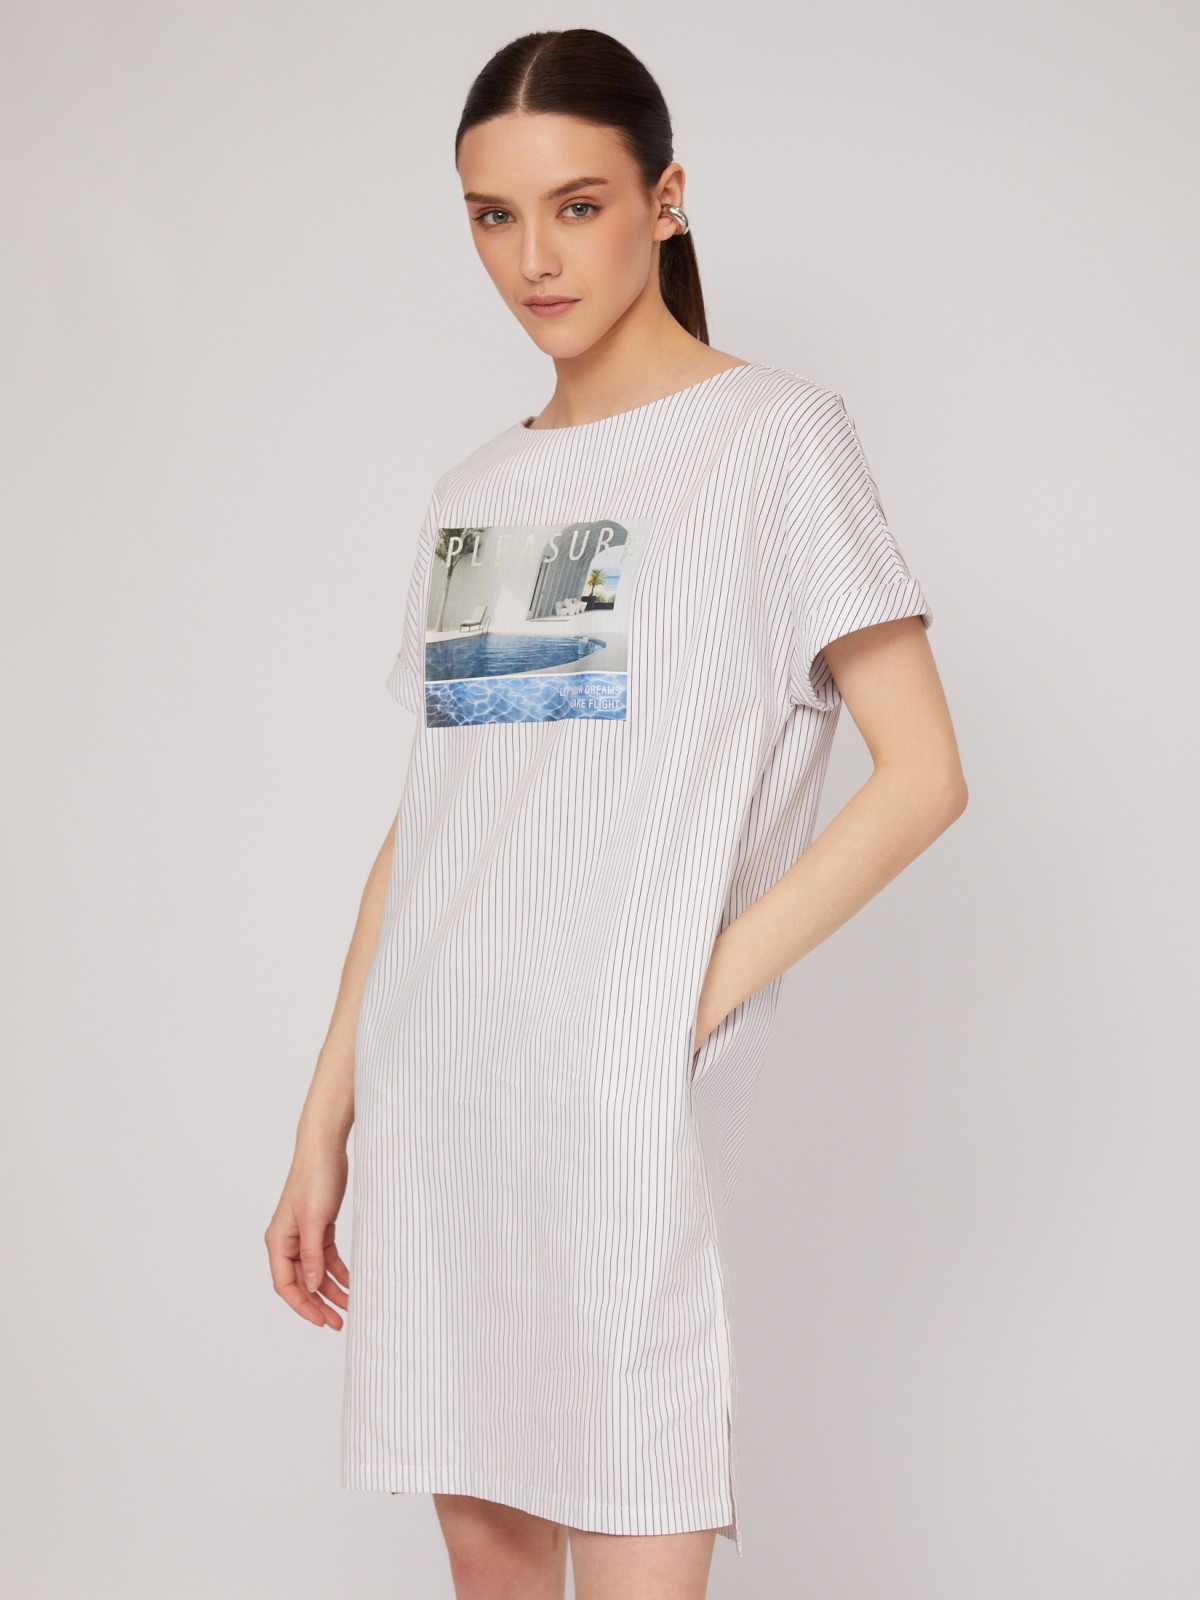 Платье-футболка из хлопка с принтом zolla 024248259593, цвет белый, размер S - фото 3